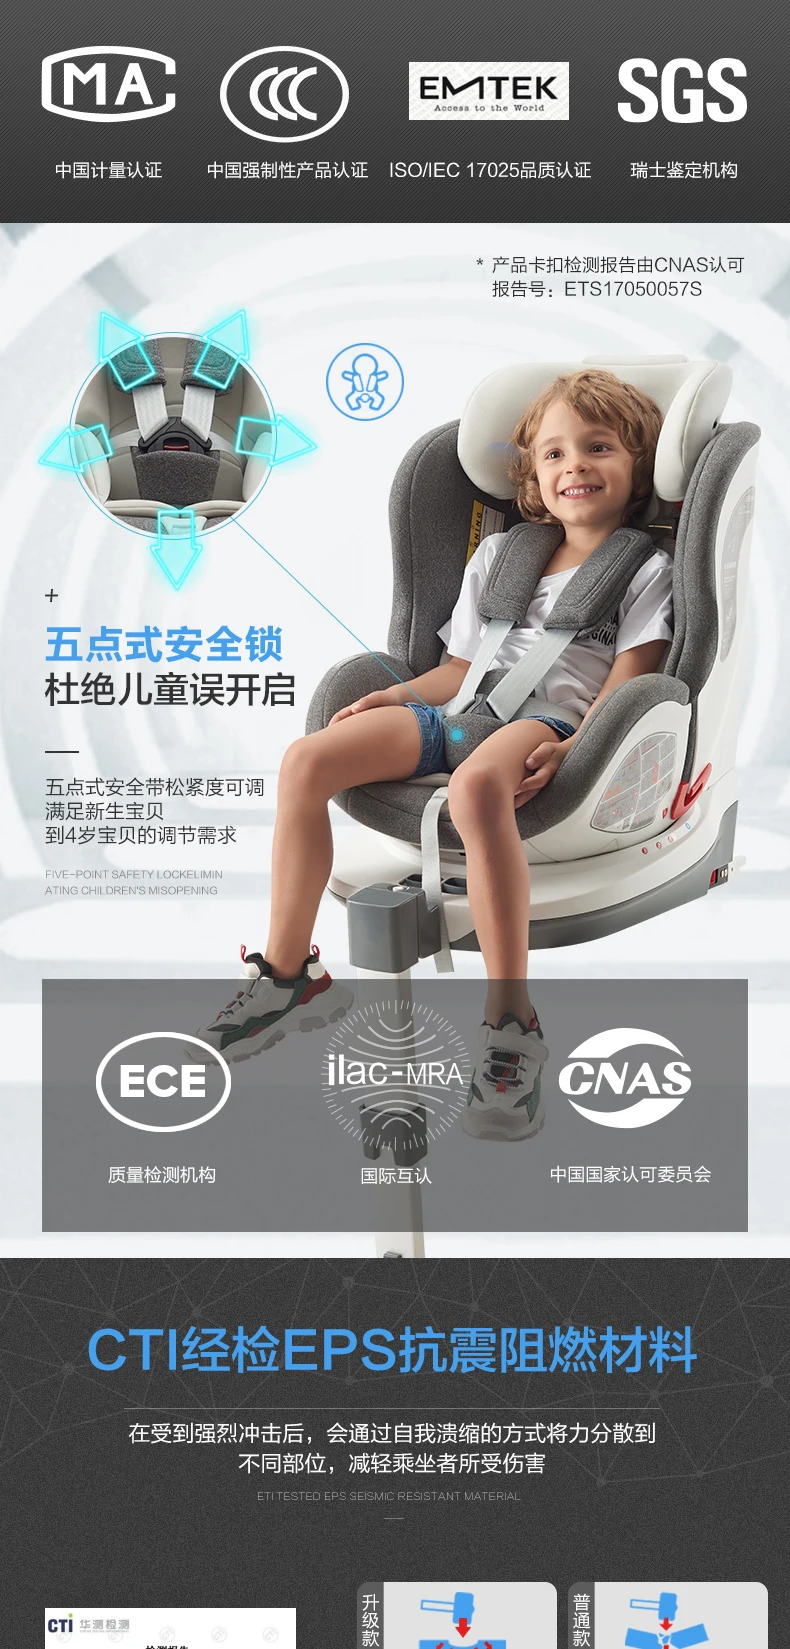 Ganen X70 детское автомобильное кресло, роскошное детское автомобильное сиденье, подпорка для головы, чехол для детского автокресла, Isofix